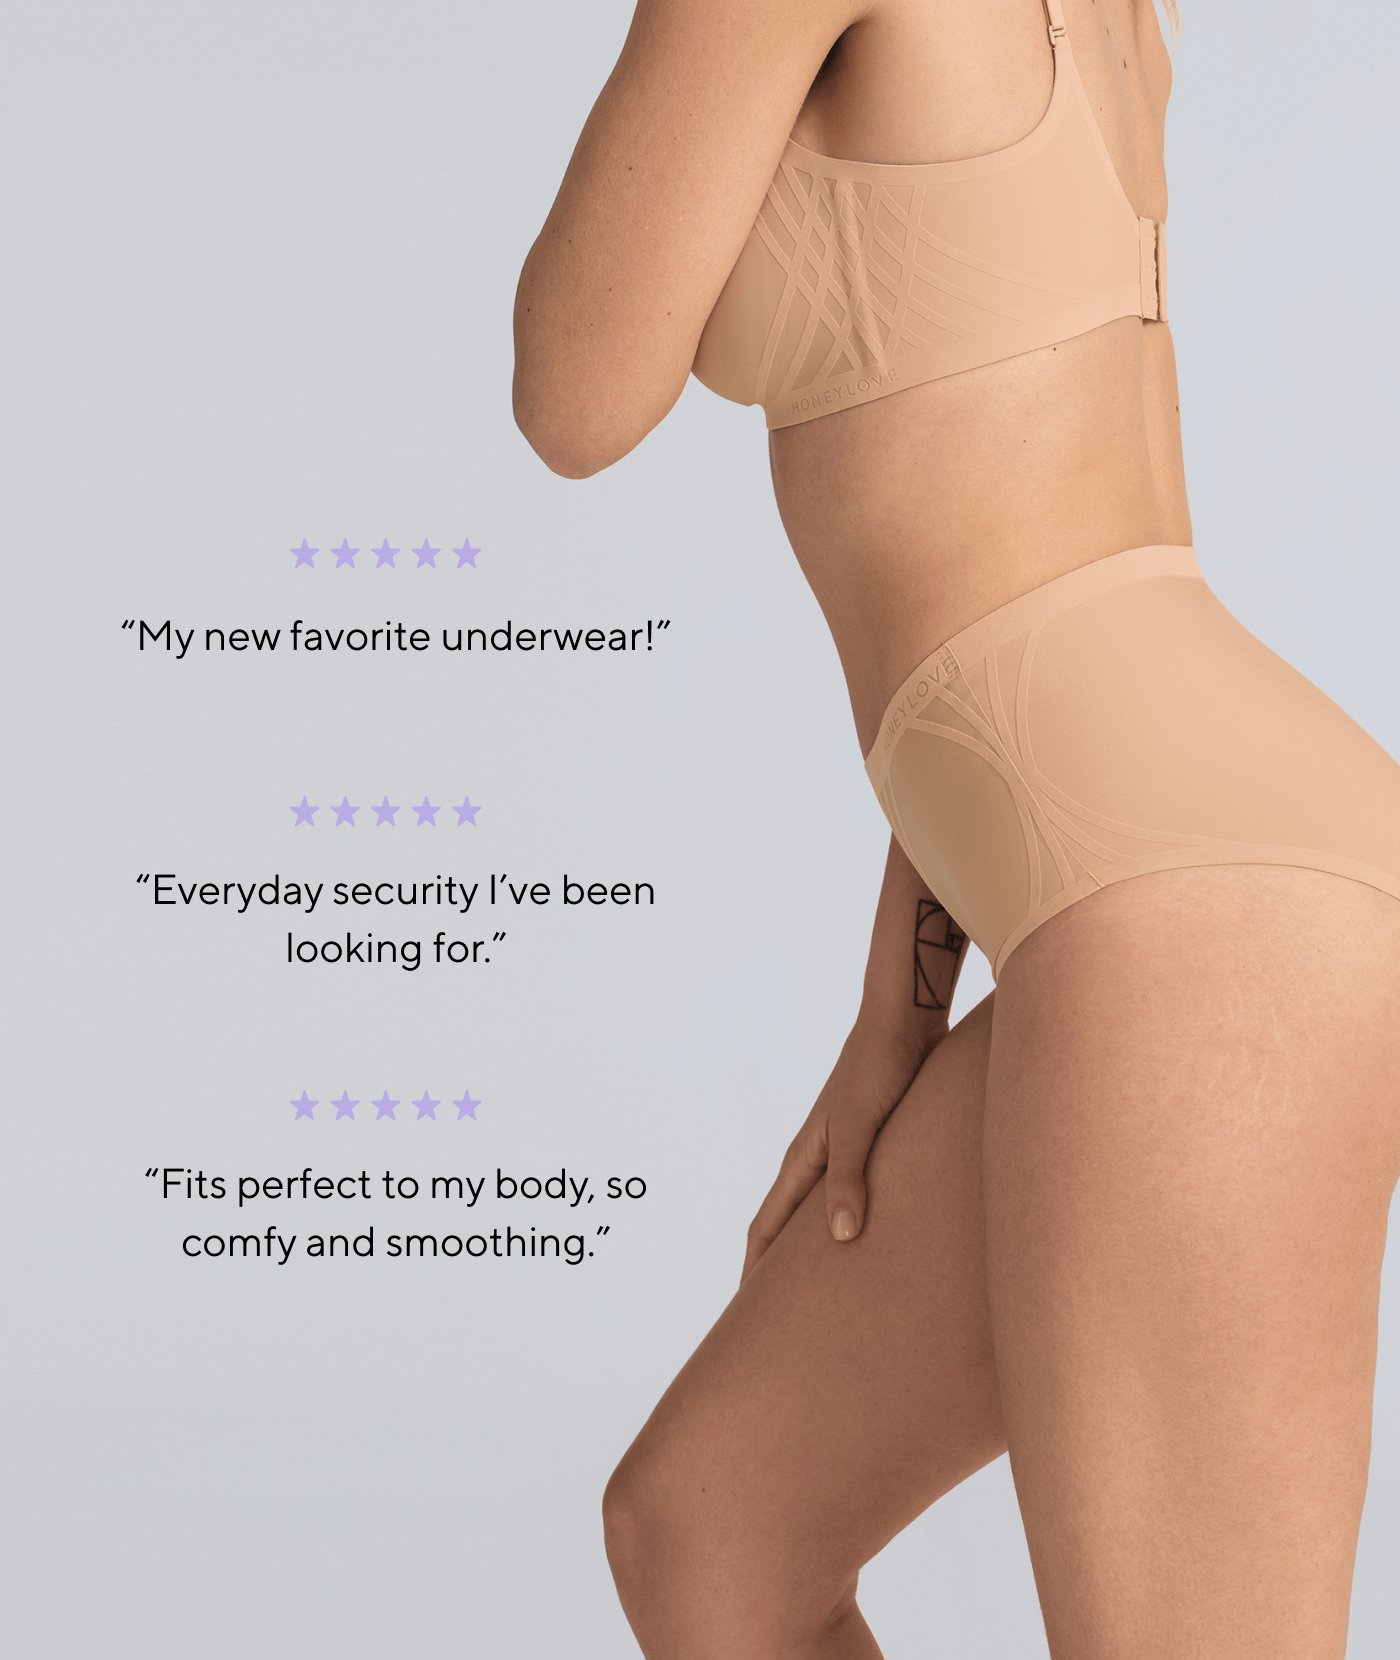 Honeylove: My new favorite underwear! - Our NEW Silhouette Brief